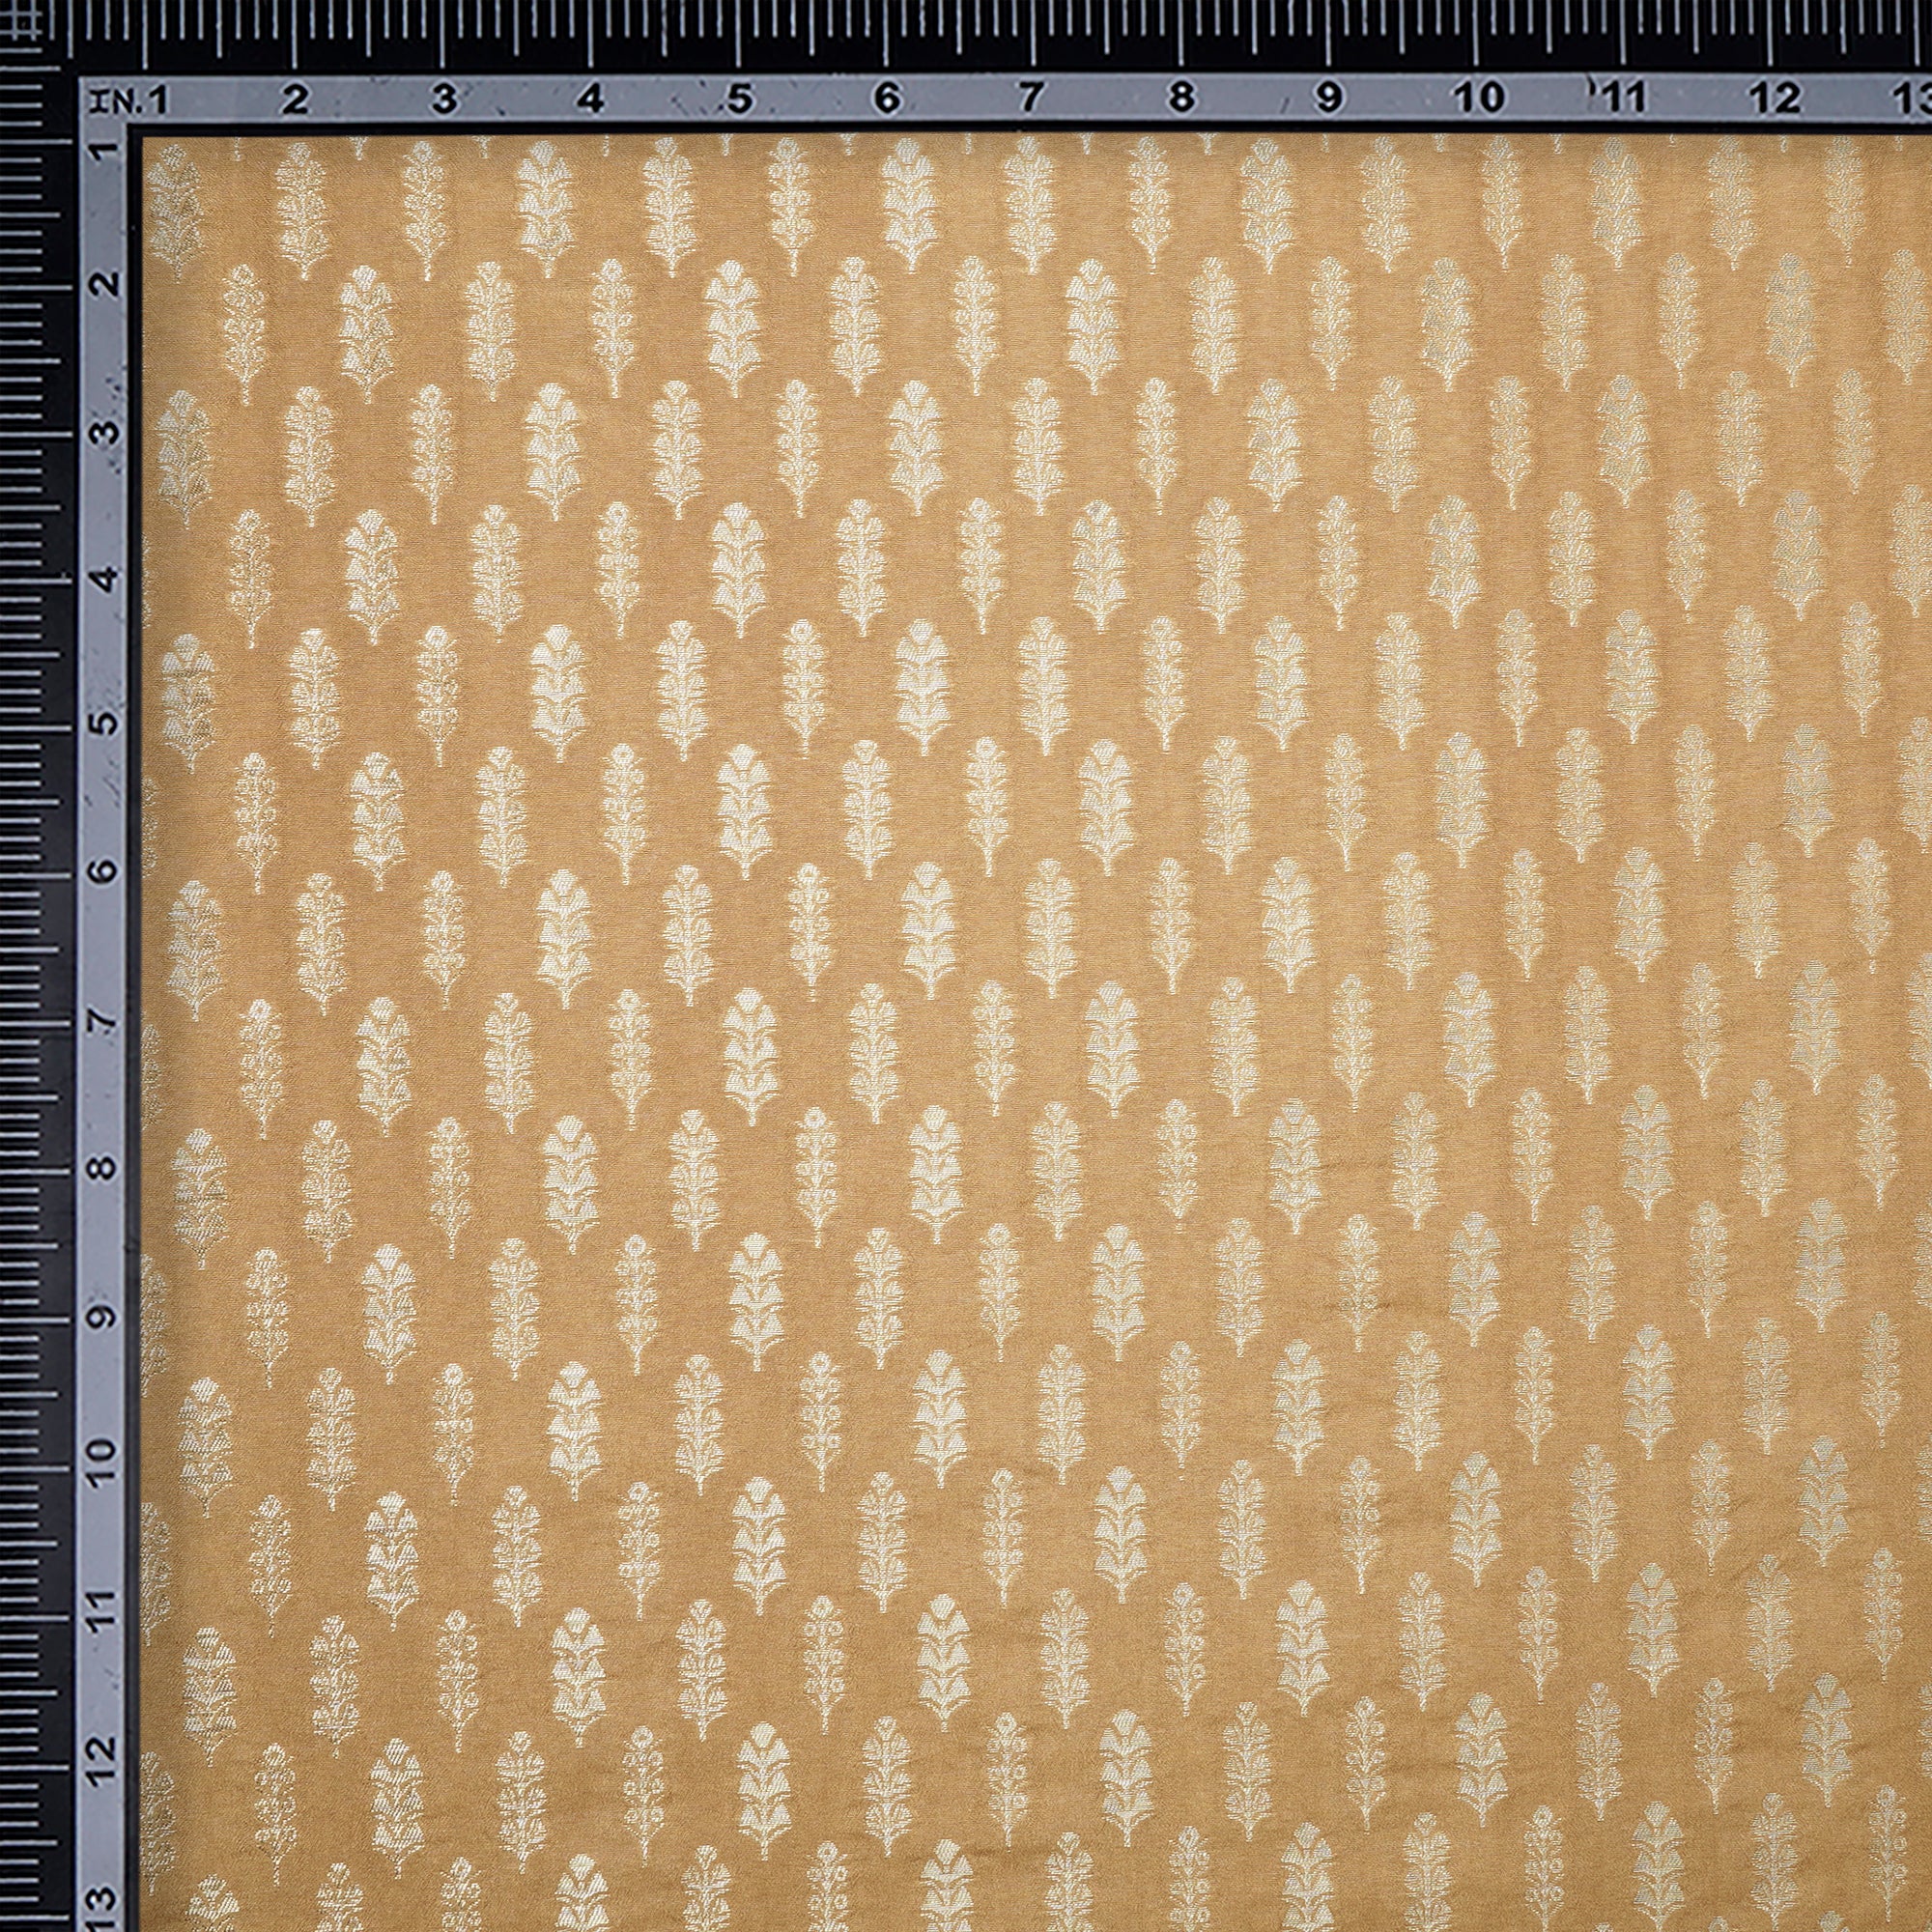 Mustard Floral Booti Pattern Blended Banarasi Brocade Fabric